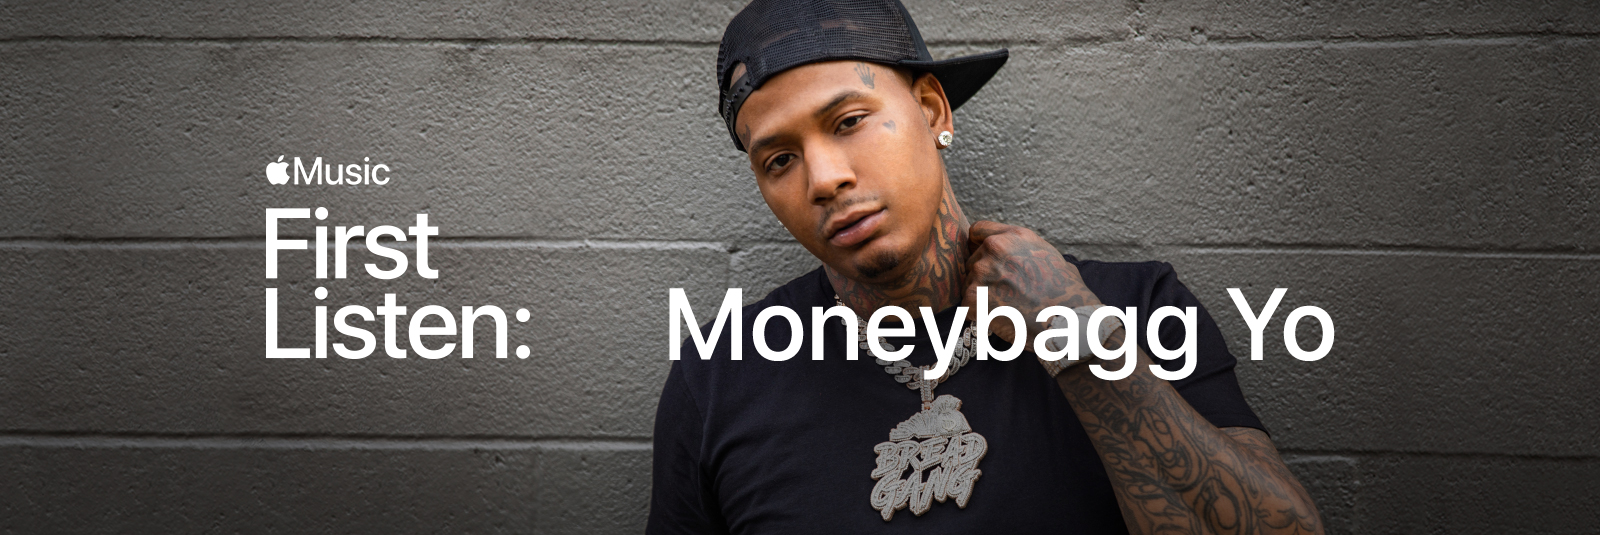 First Listen: Moneybagg Yo